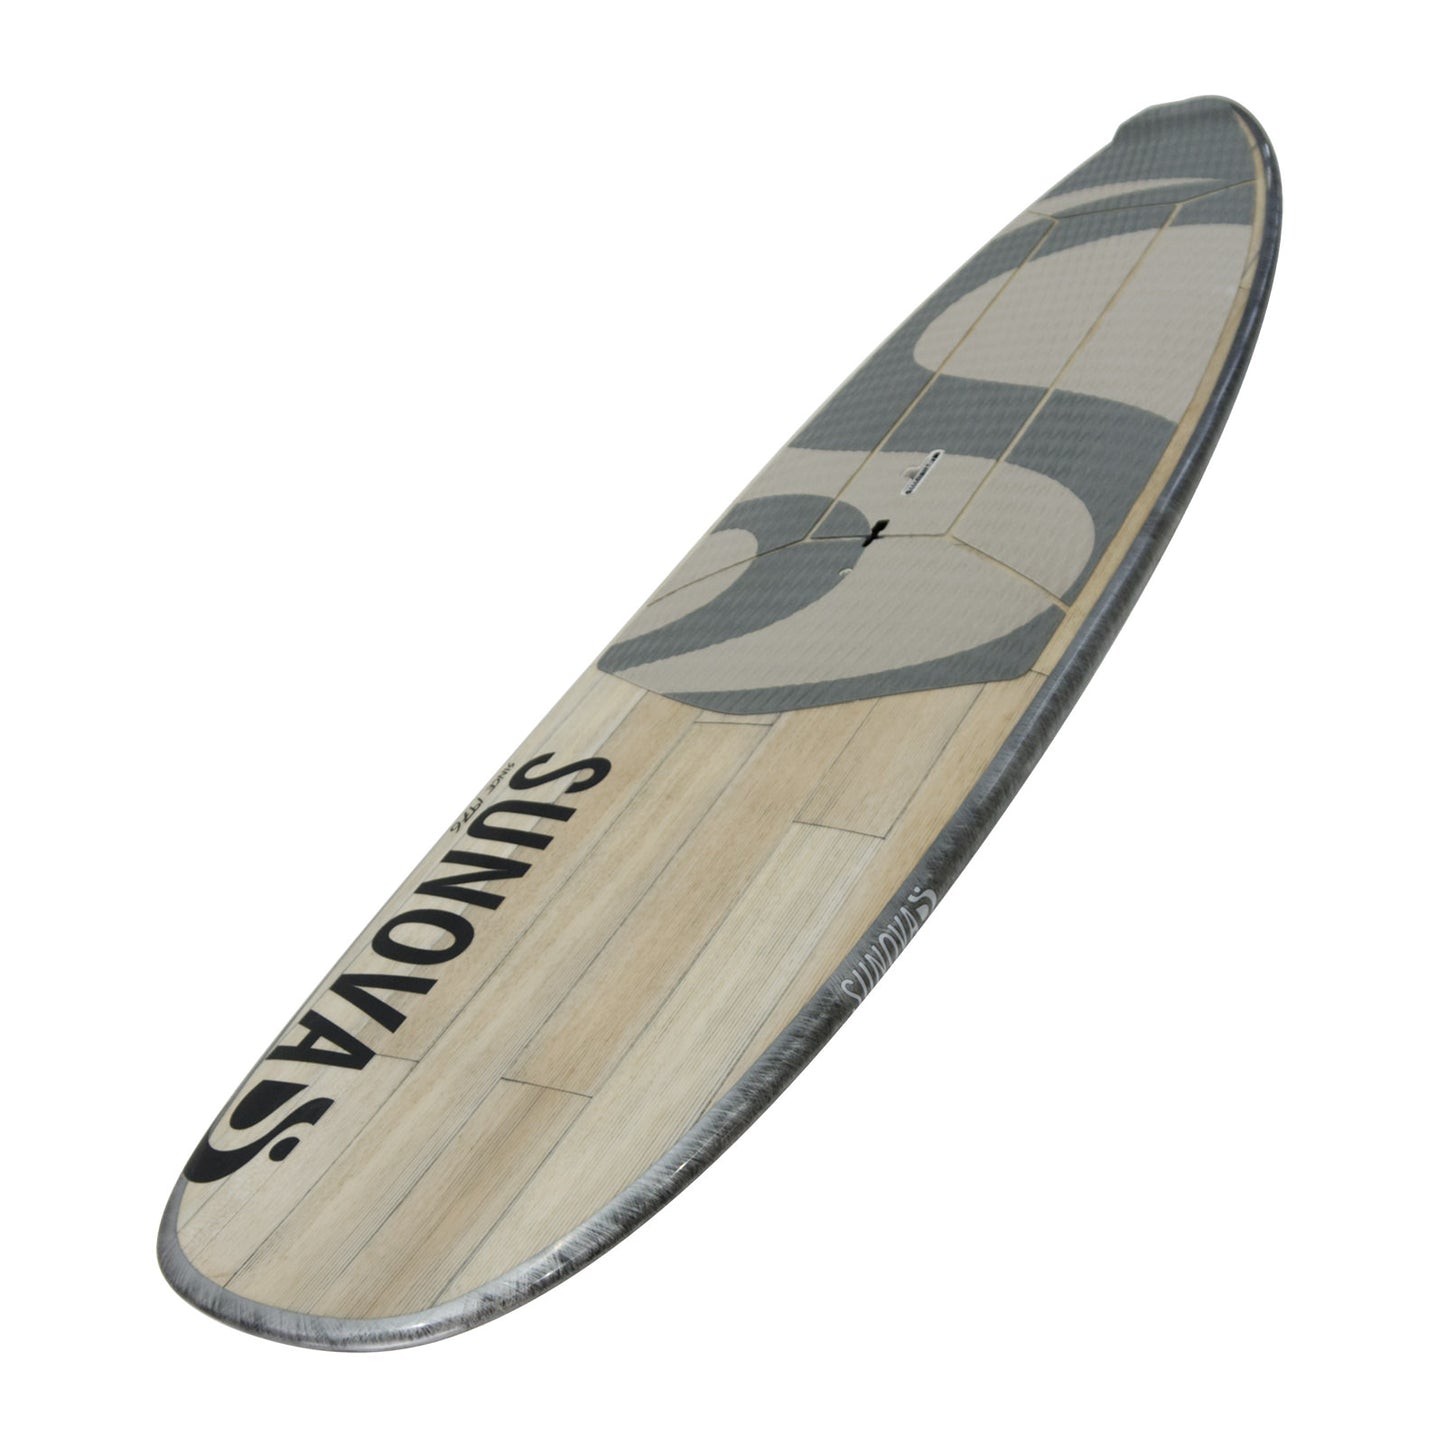 Perspektivische Ansicht des Sunova Style Wave SUP Board in der XXX Bauweise.